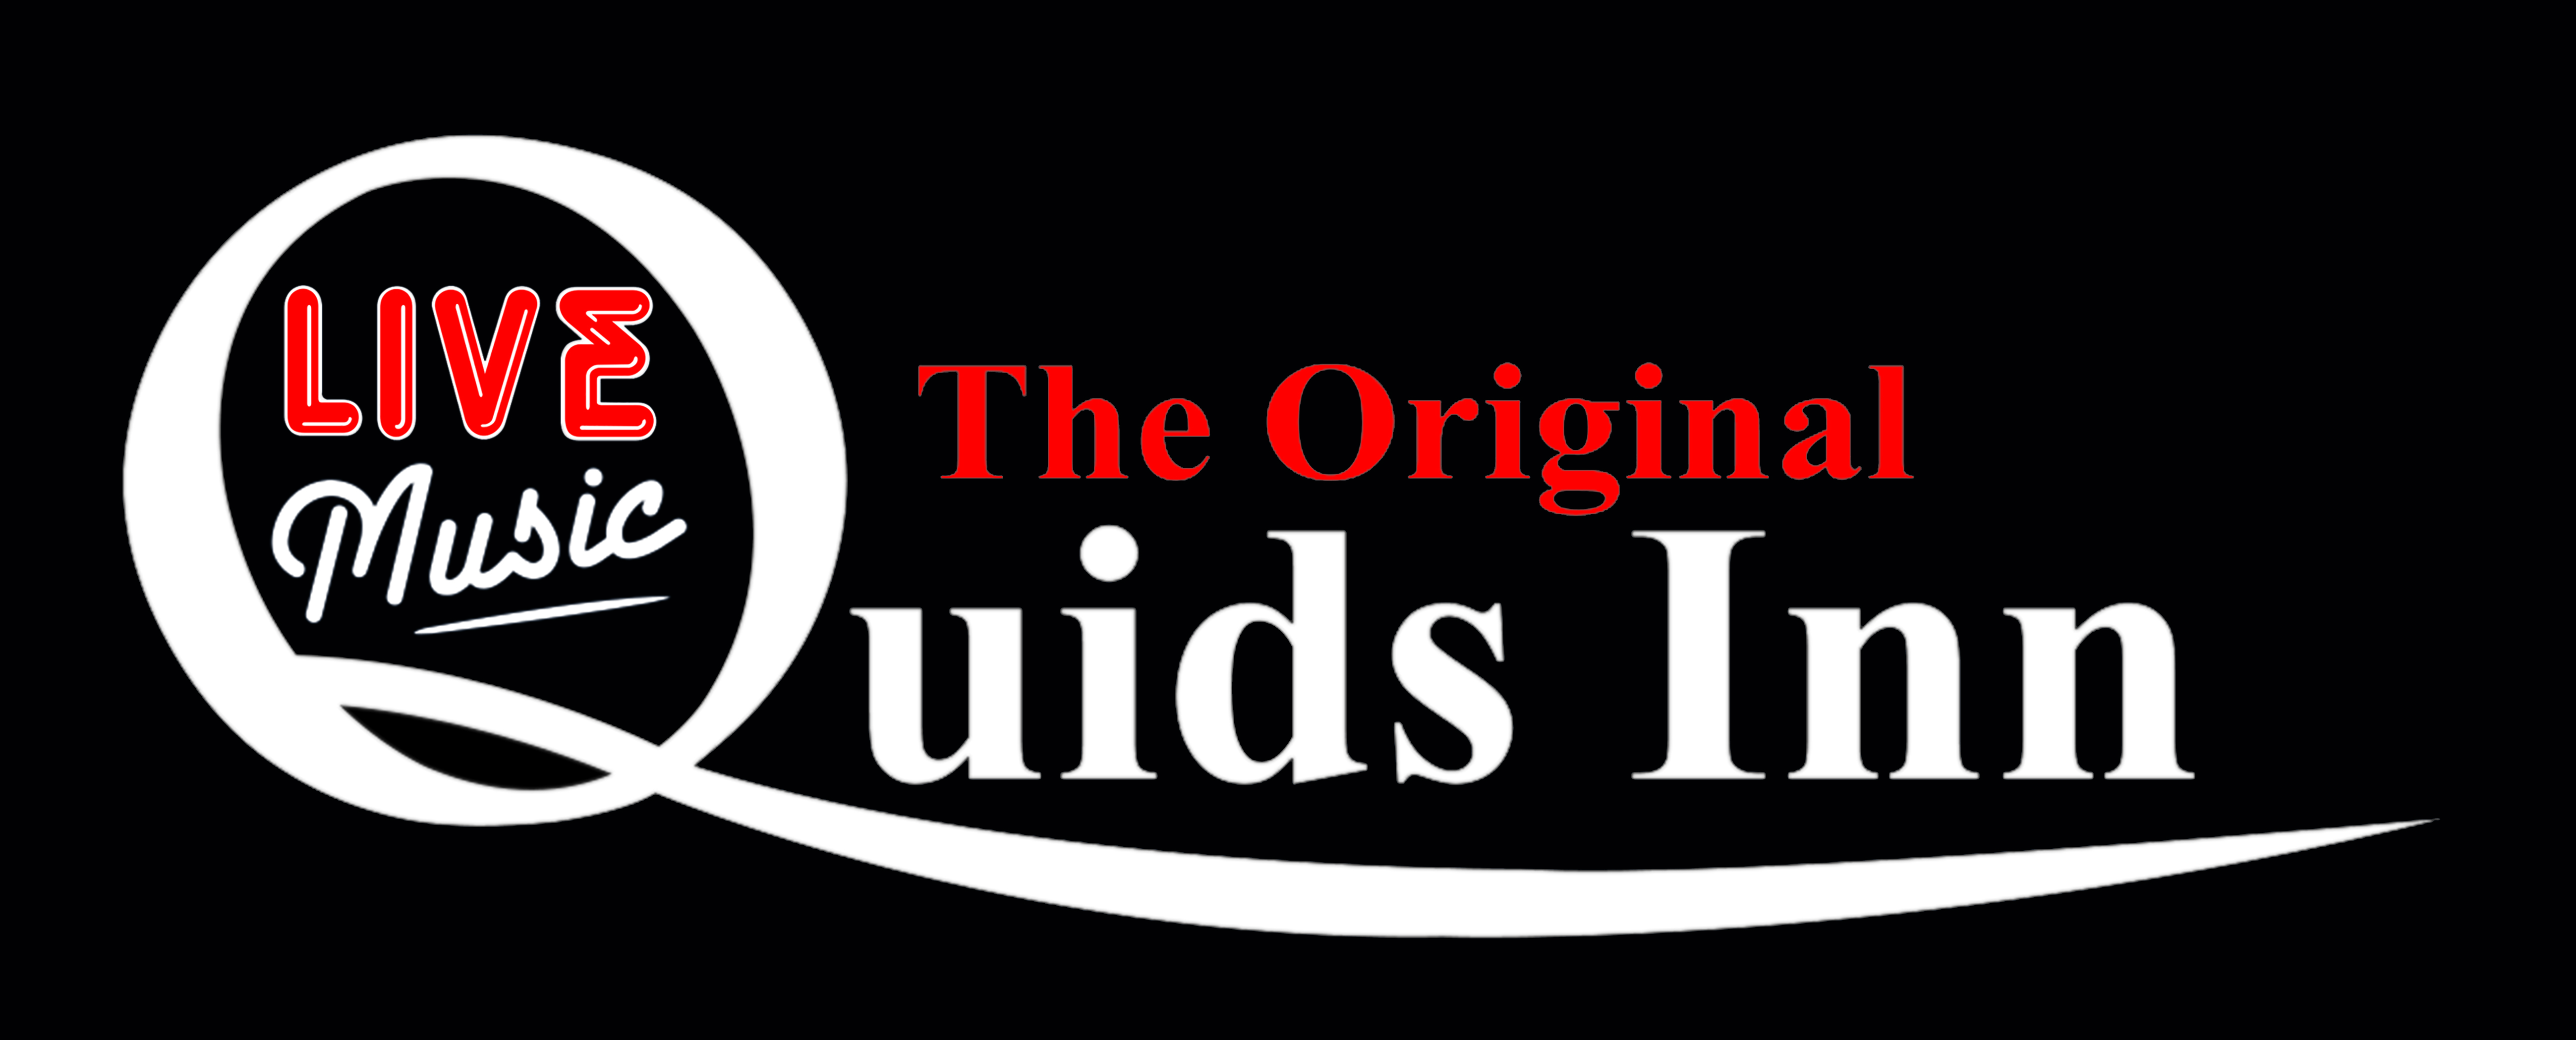 The Original Quids Inn